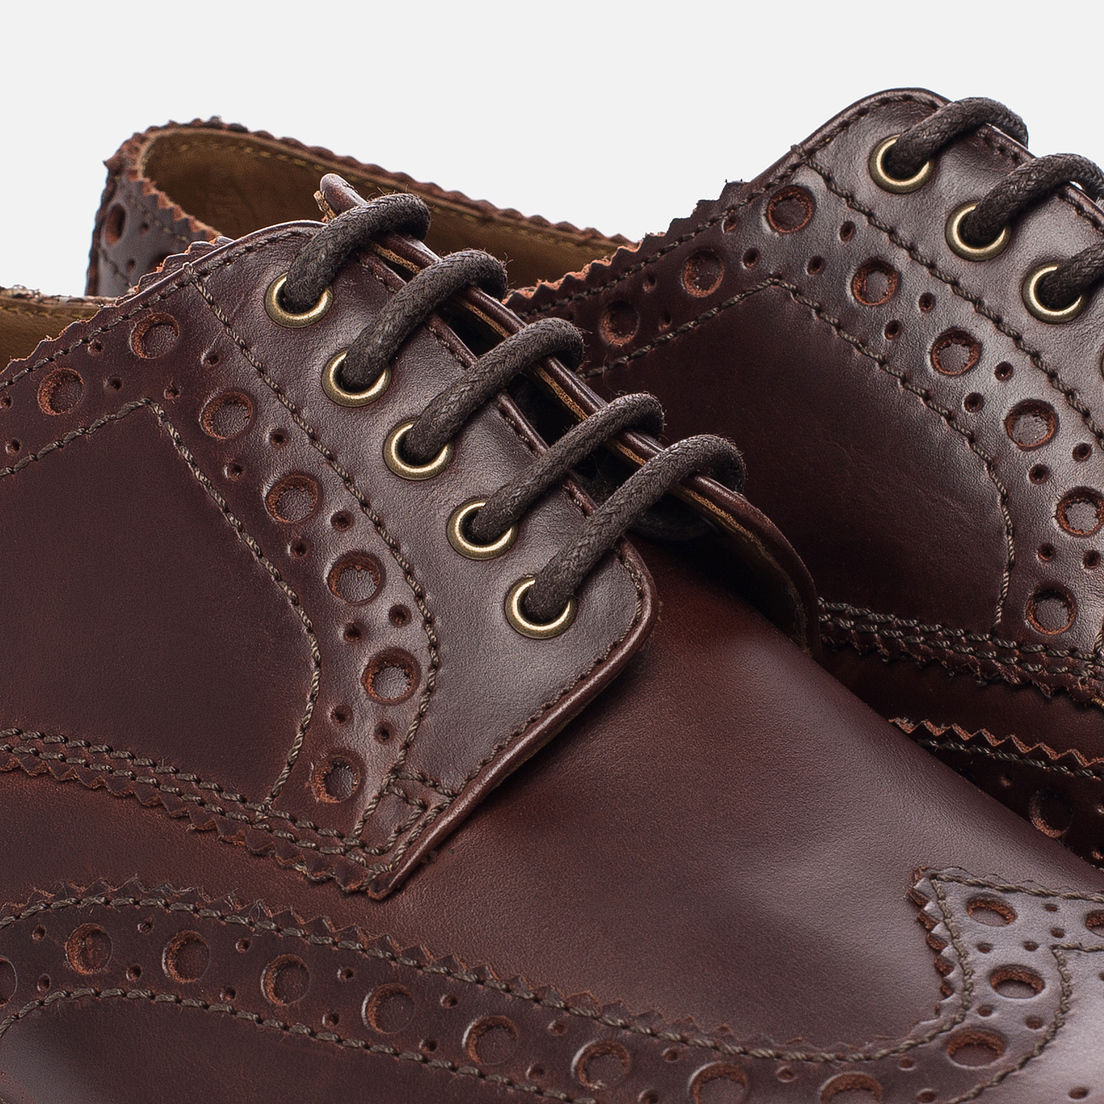 Grenson Мужские ботинки броги Archie Brogue Sole Leather